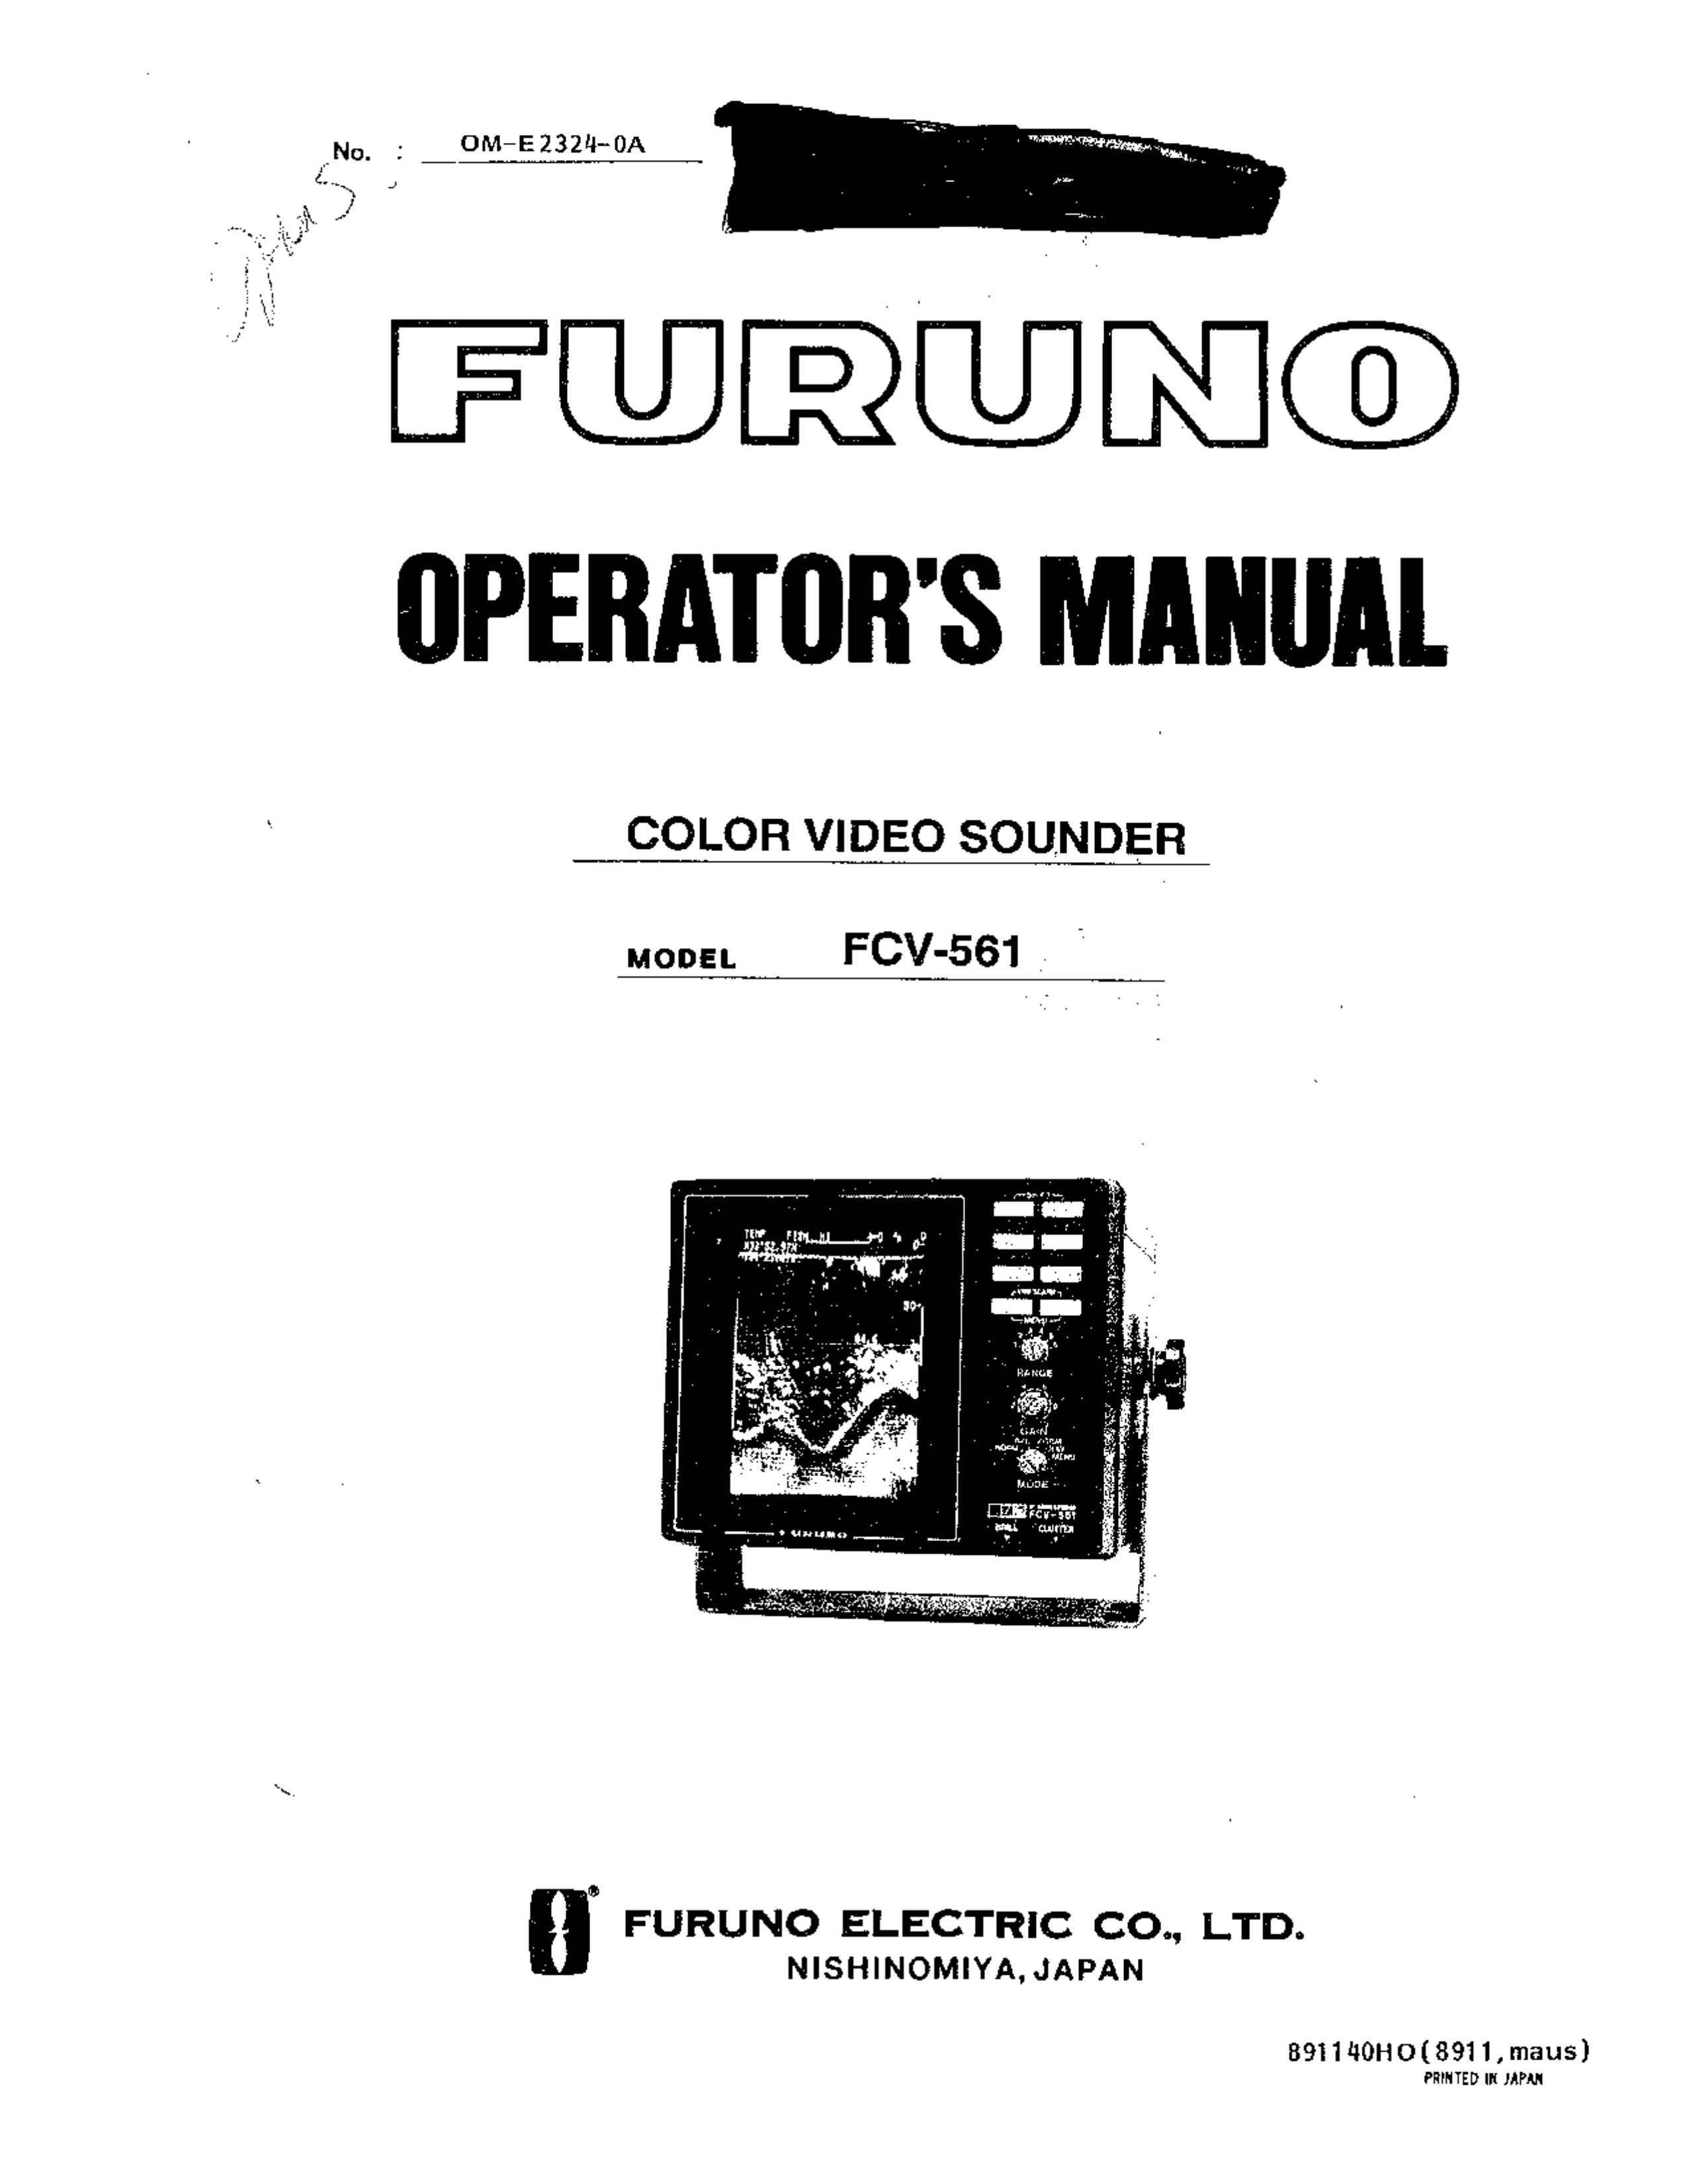 Furuno FCV-561 Backyard Playset User Manual (Page 1)